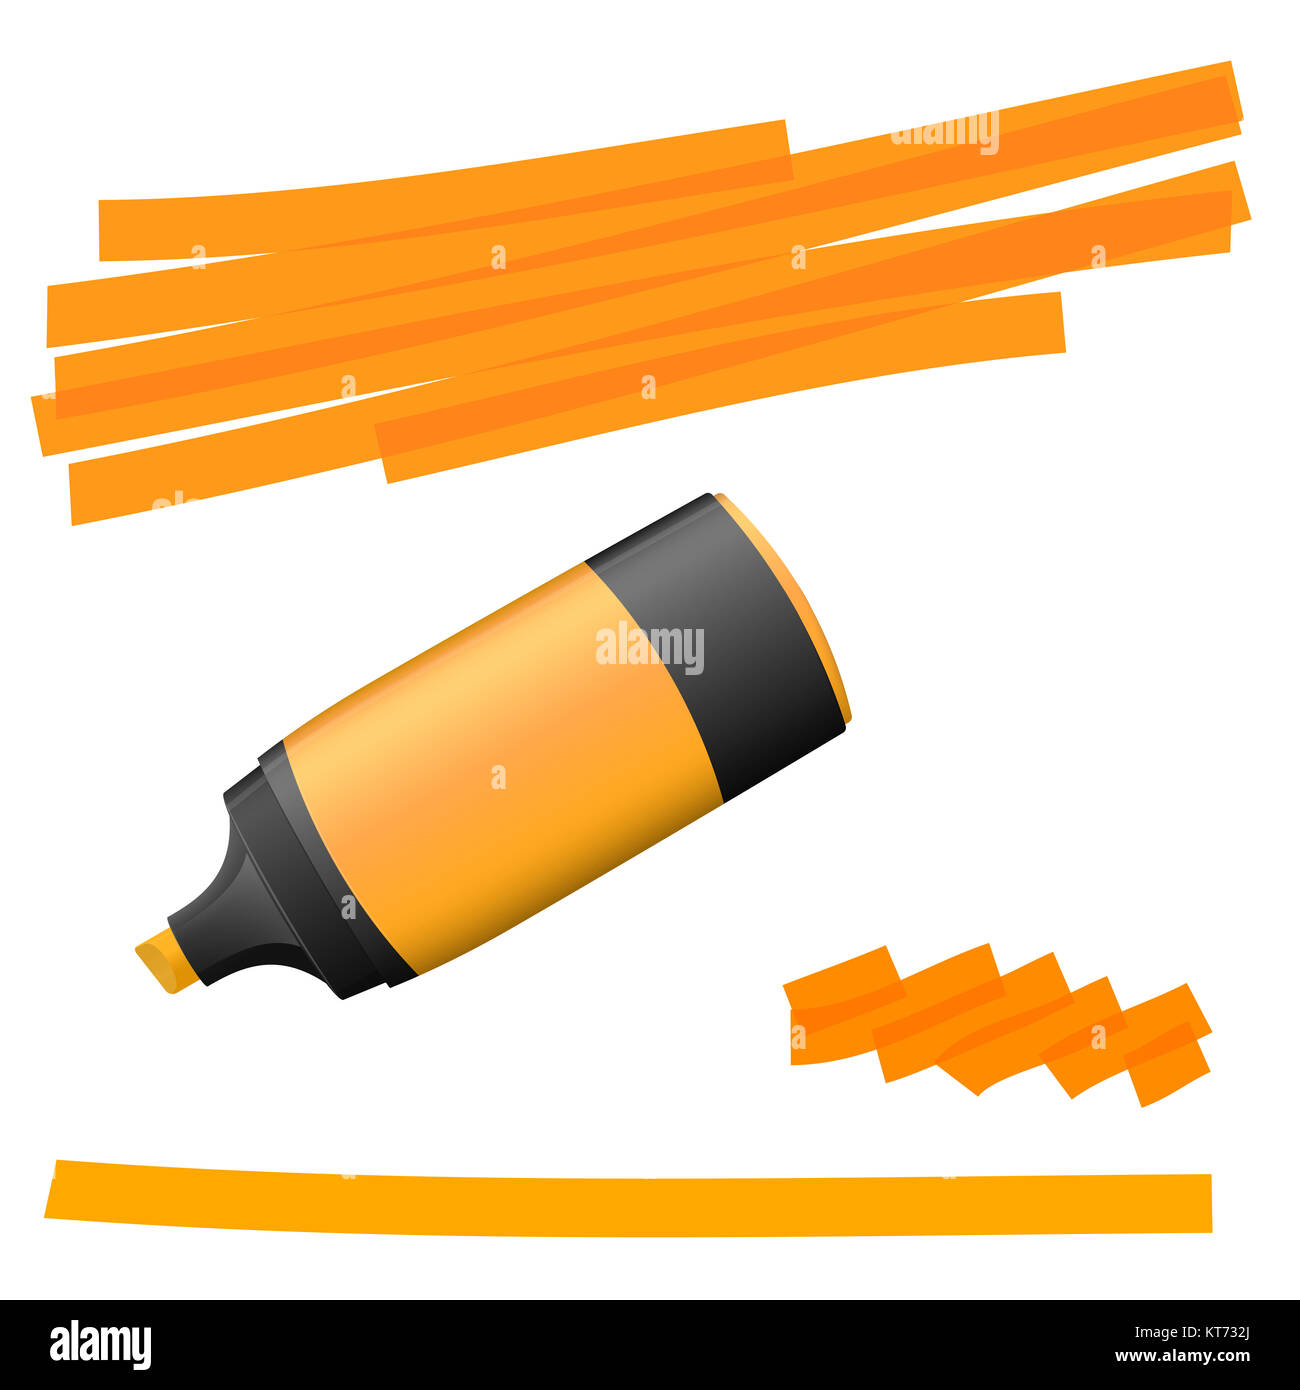 Haut de couleur orange avec des marques plus claires pour l'utilisation de la publicité Banque D'Images